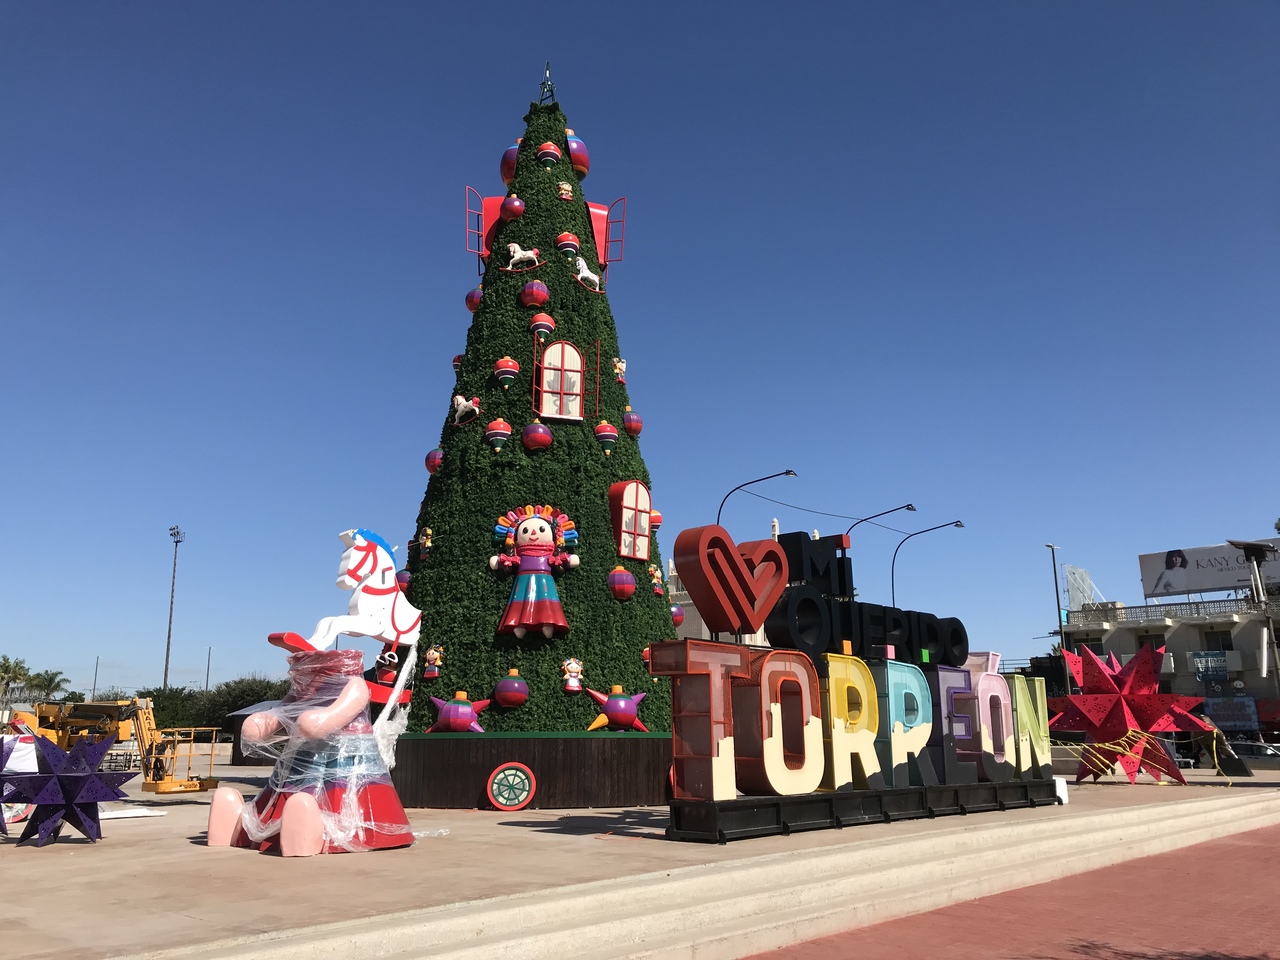 Colocan el árbol monumental en Plaza Mayor, junto con otros elementos alusivos a la Navidad en Torreón.